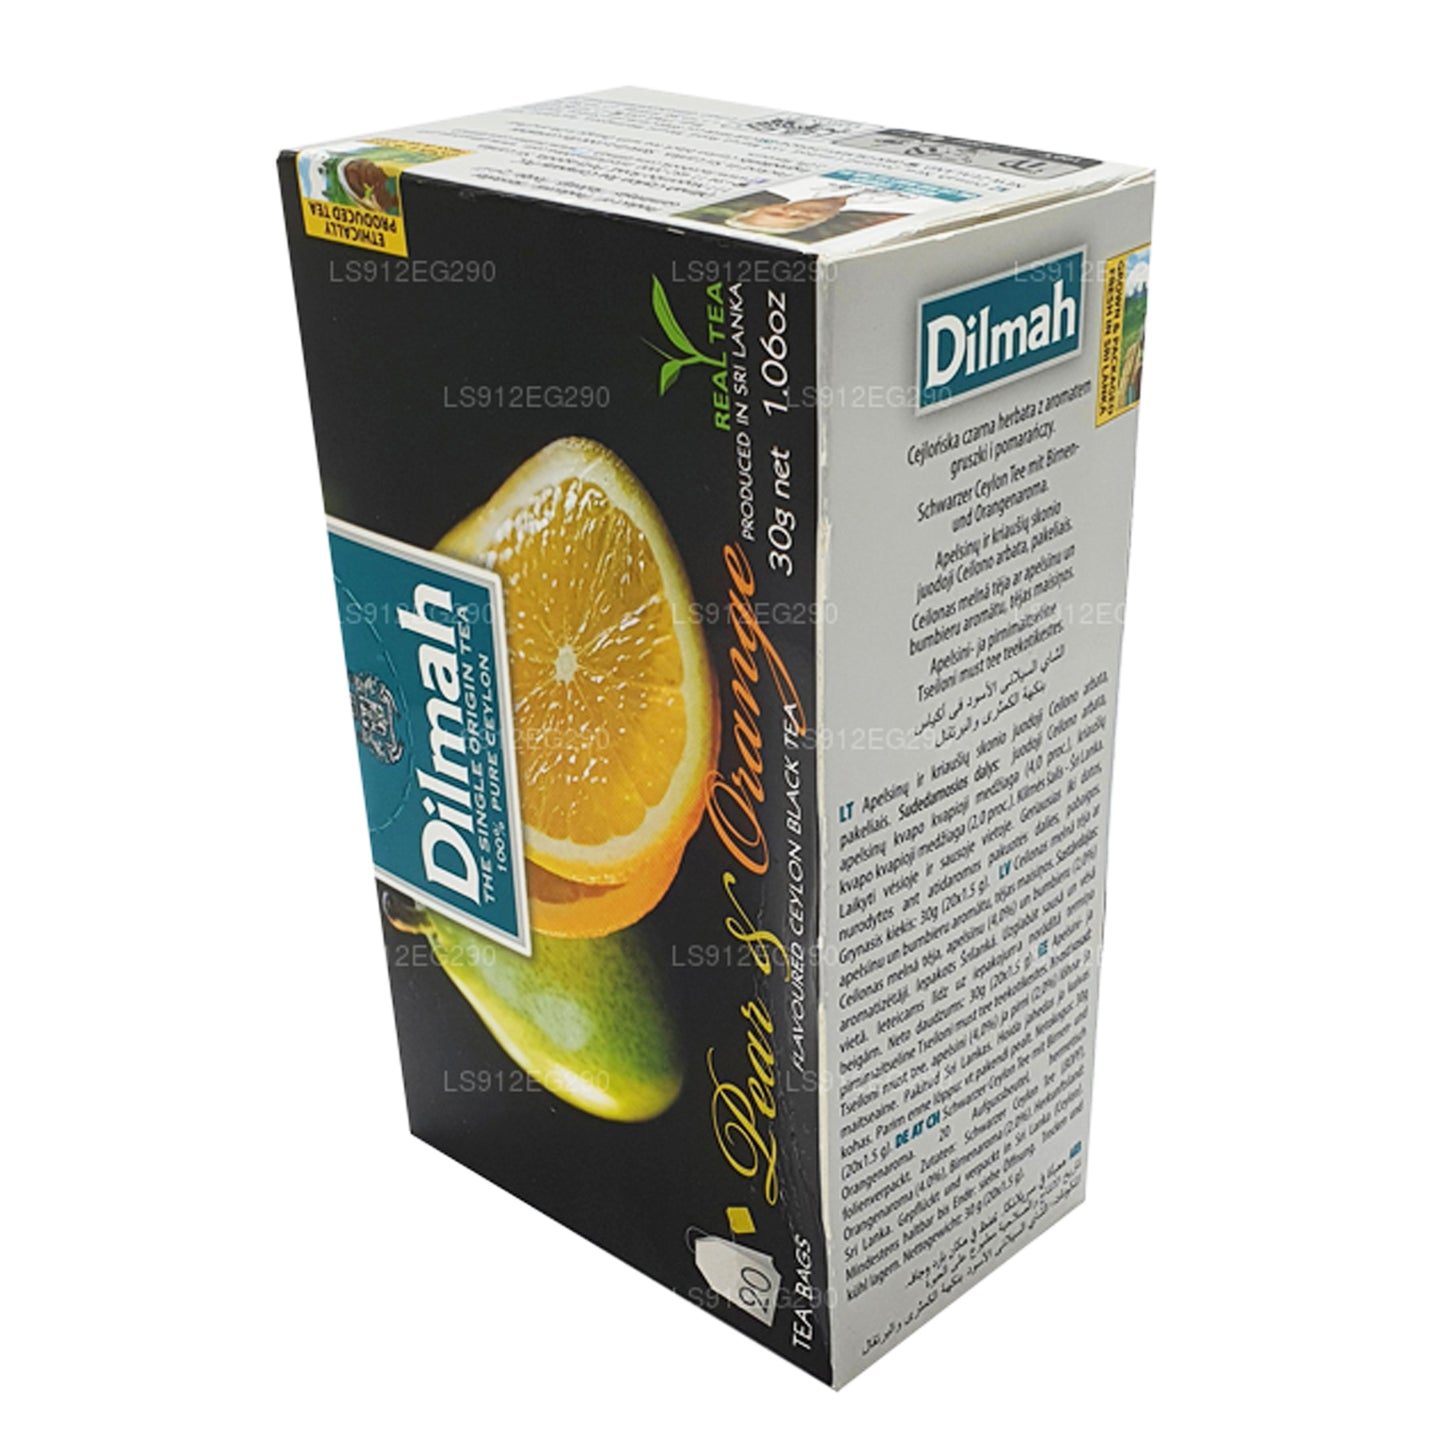 شاي السيلاني الأسود بنكهة الكمثرى والبرتقال من ديلما (30 جم) 20 كيس شاي